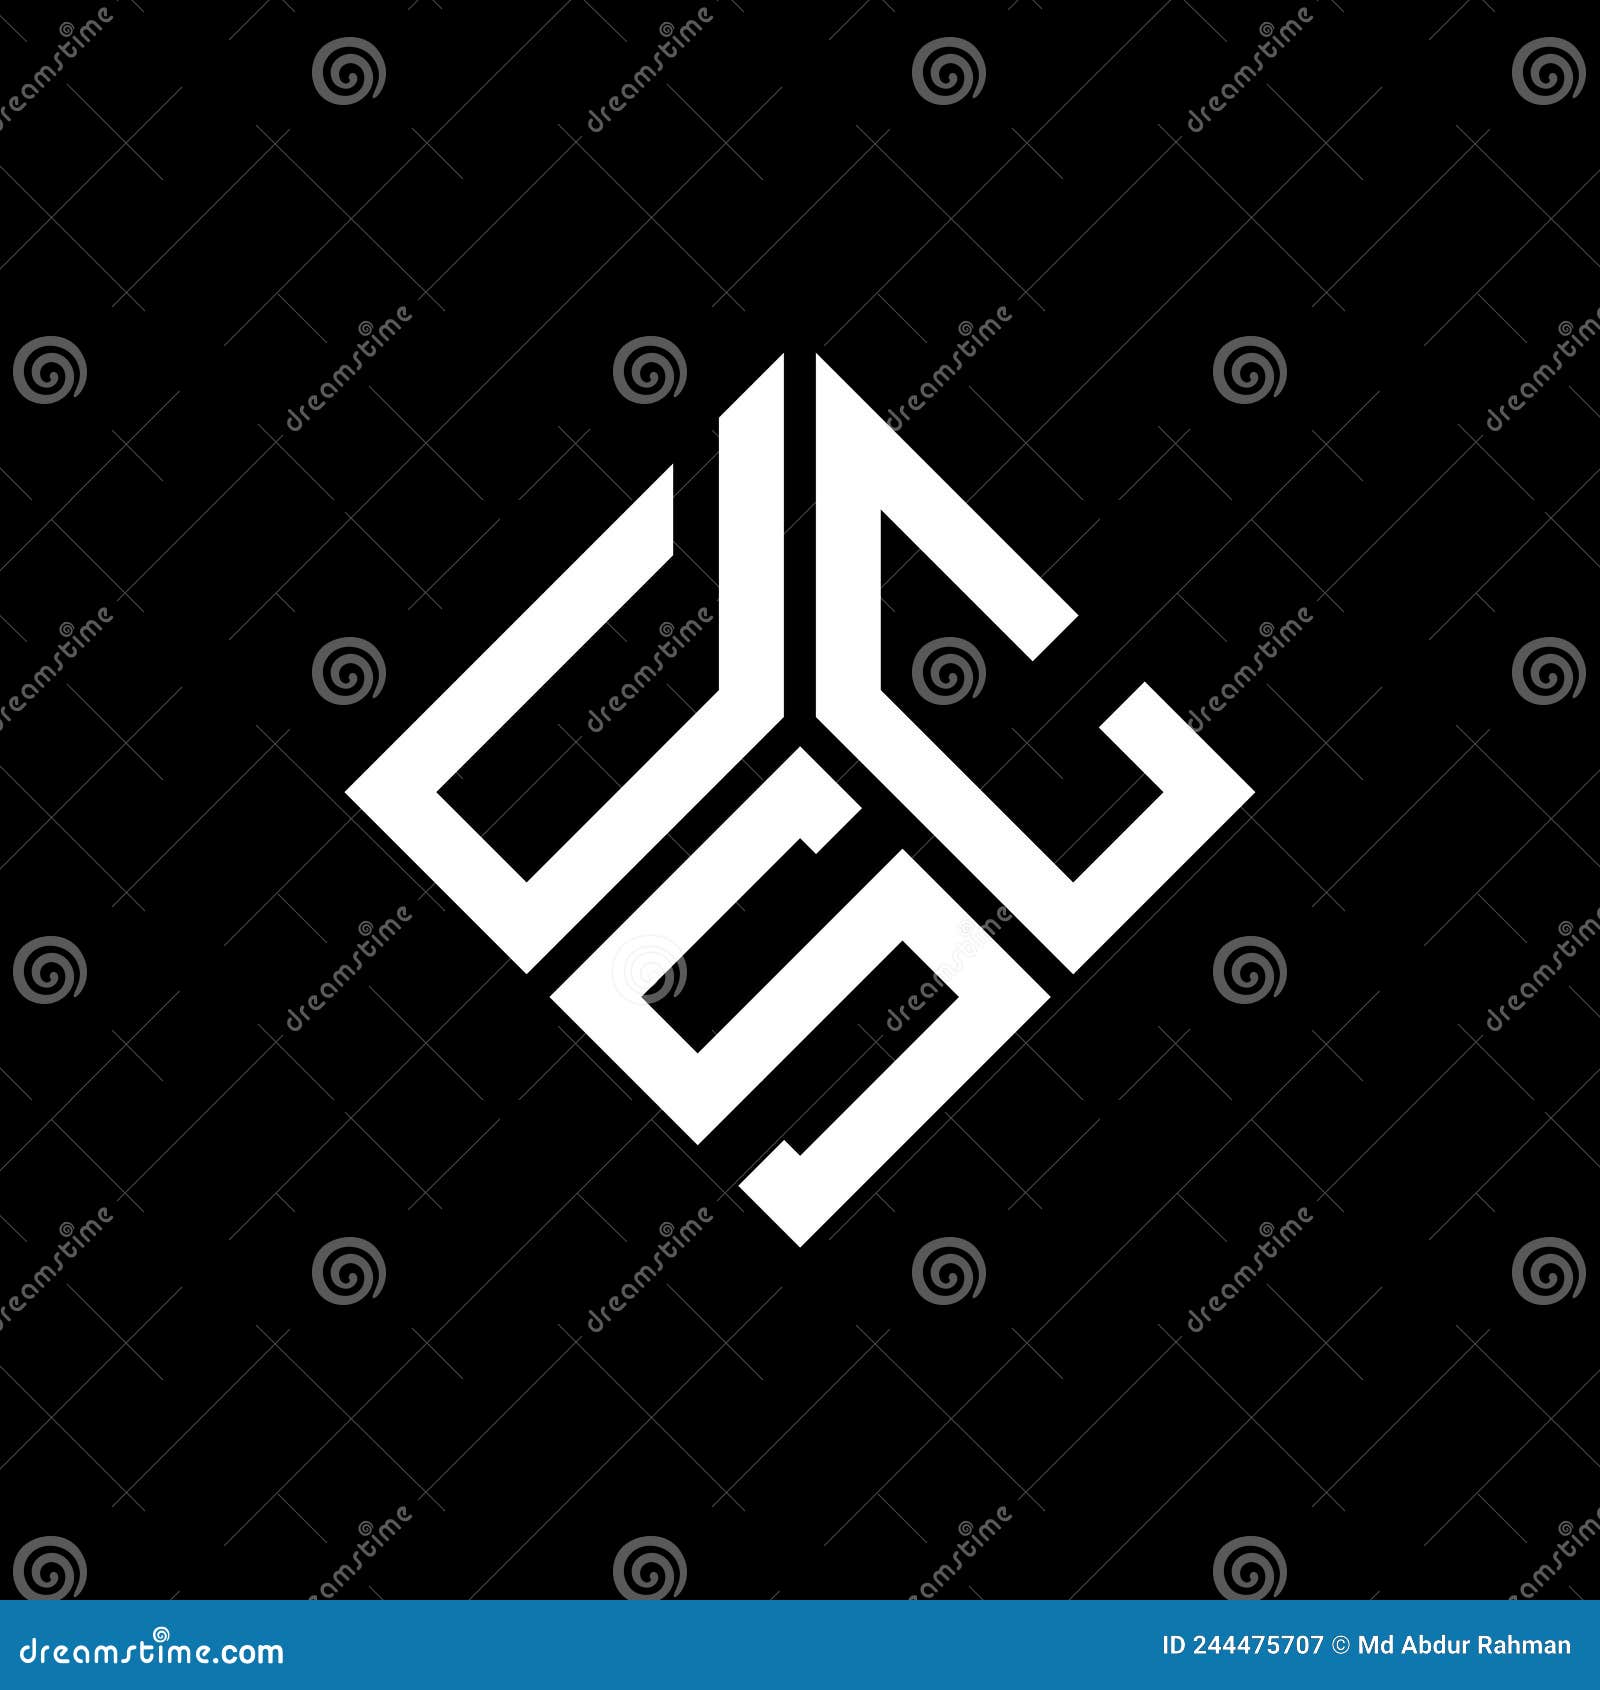 dsc letter logo  on black background. dsc creative initials letter logo concept. dsc letter 